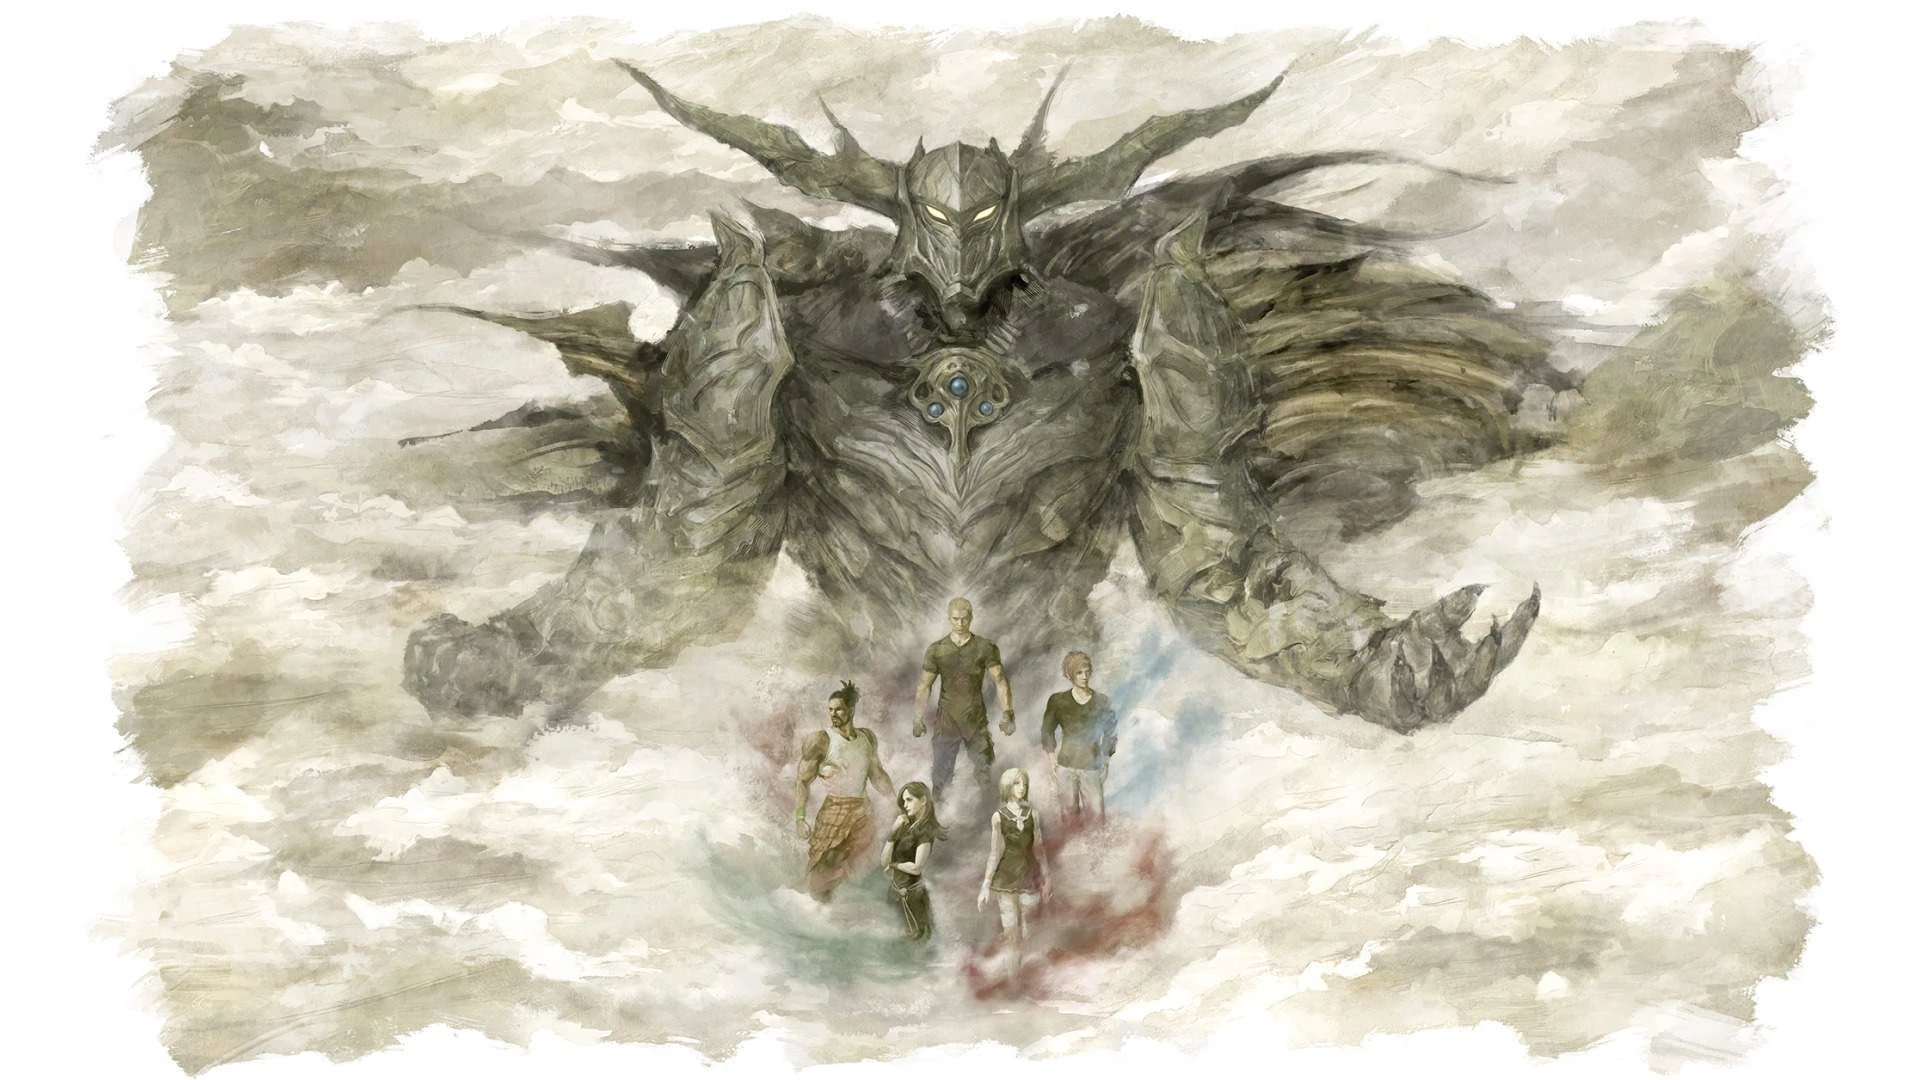 Stranger of Paradise: Final Fantasy Origin voor de PlayStation 4 preorder plaatsen op nedgame.nl